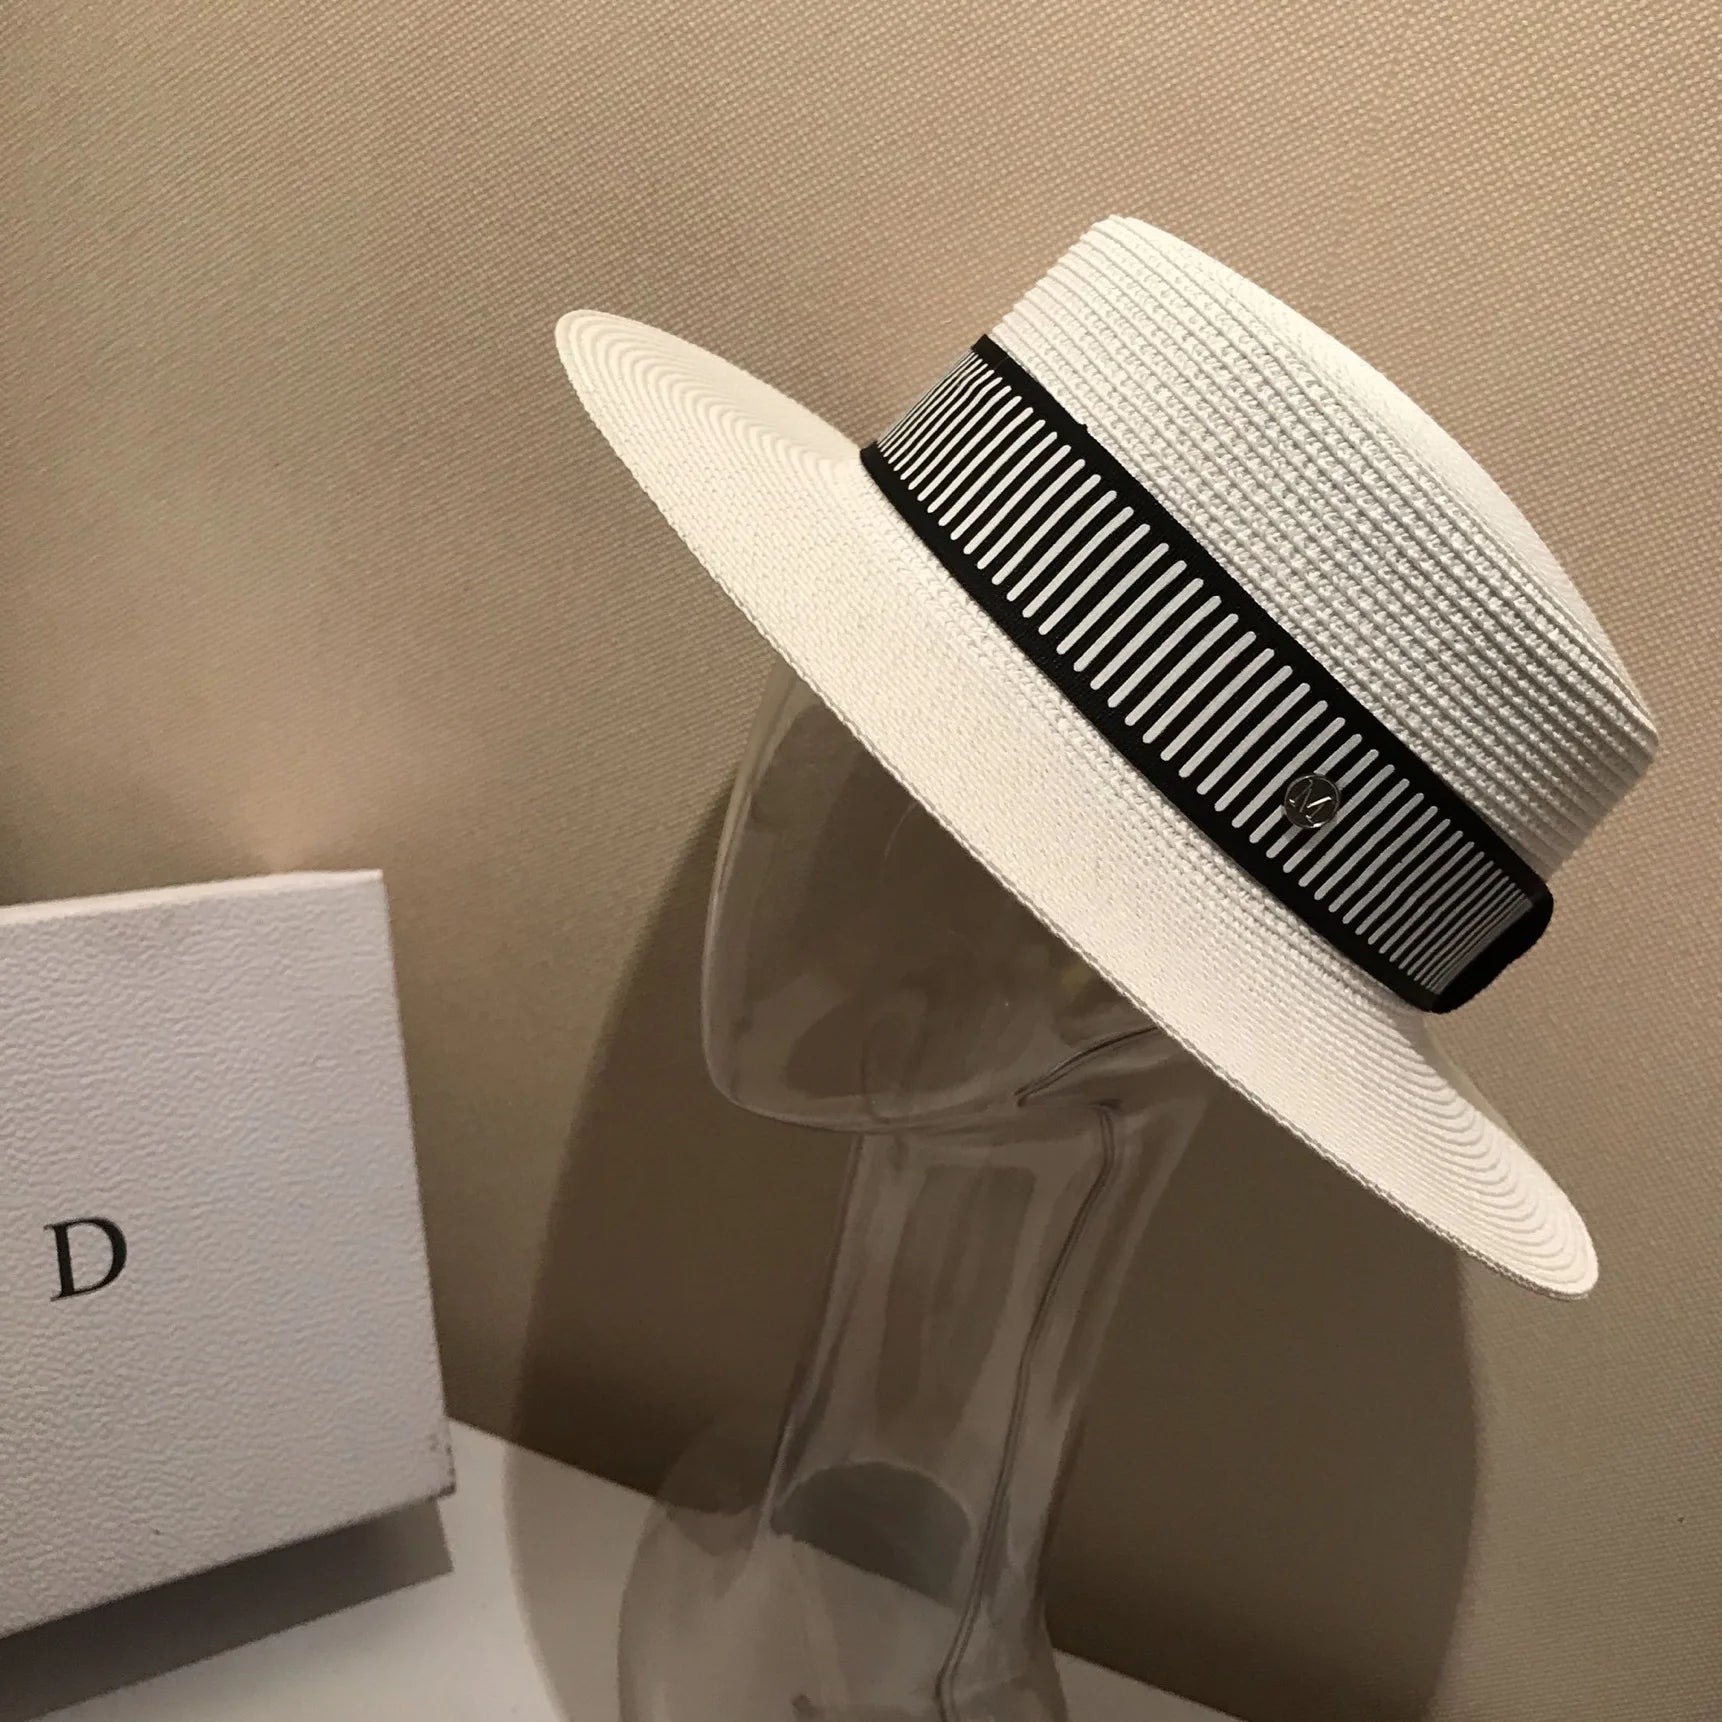 La boutique du chapeau Chapeau de paille rayé britannique